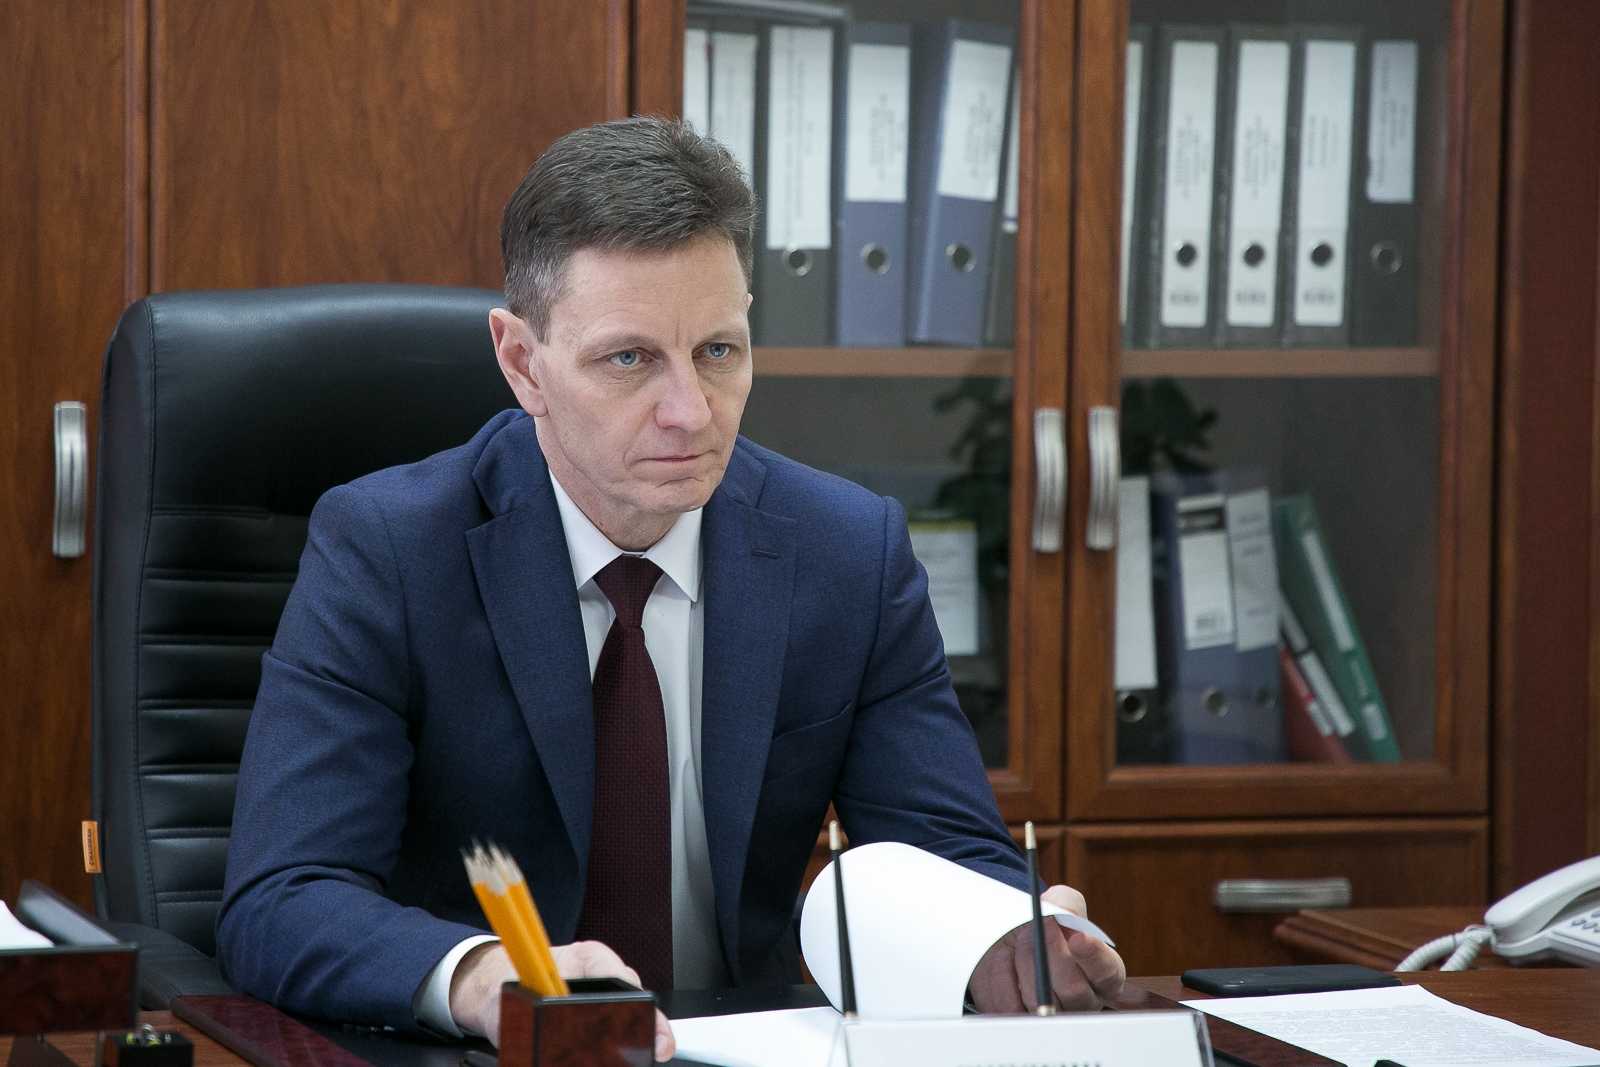 Фото: личная страница губернатора в социальной сети "ВКонтакте"